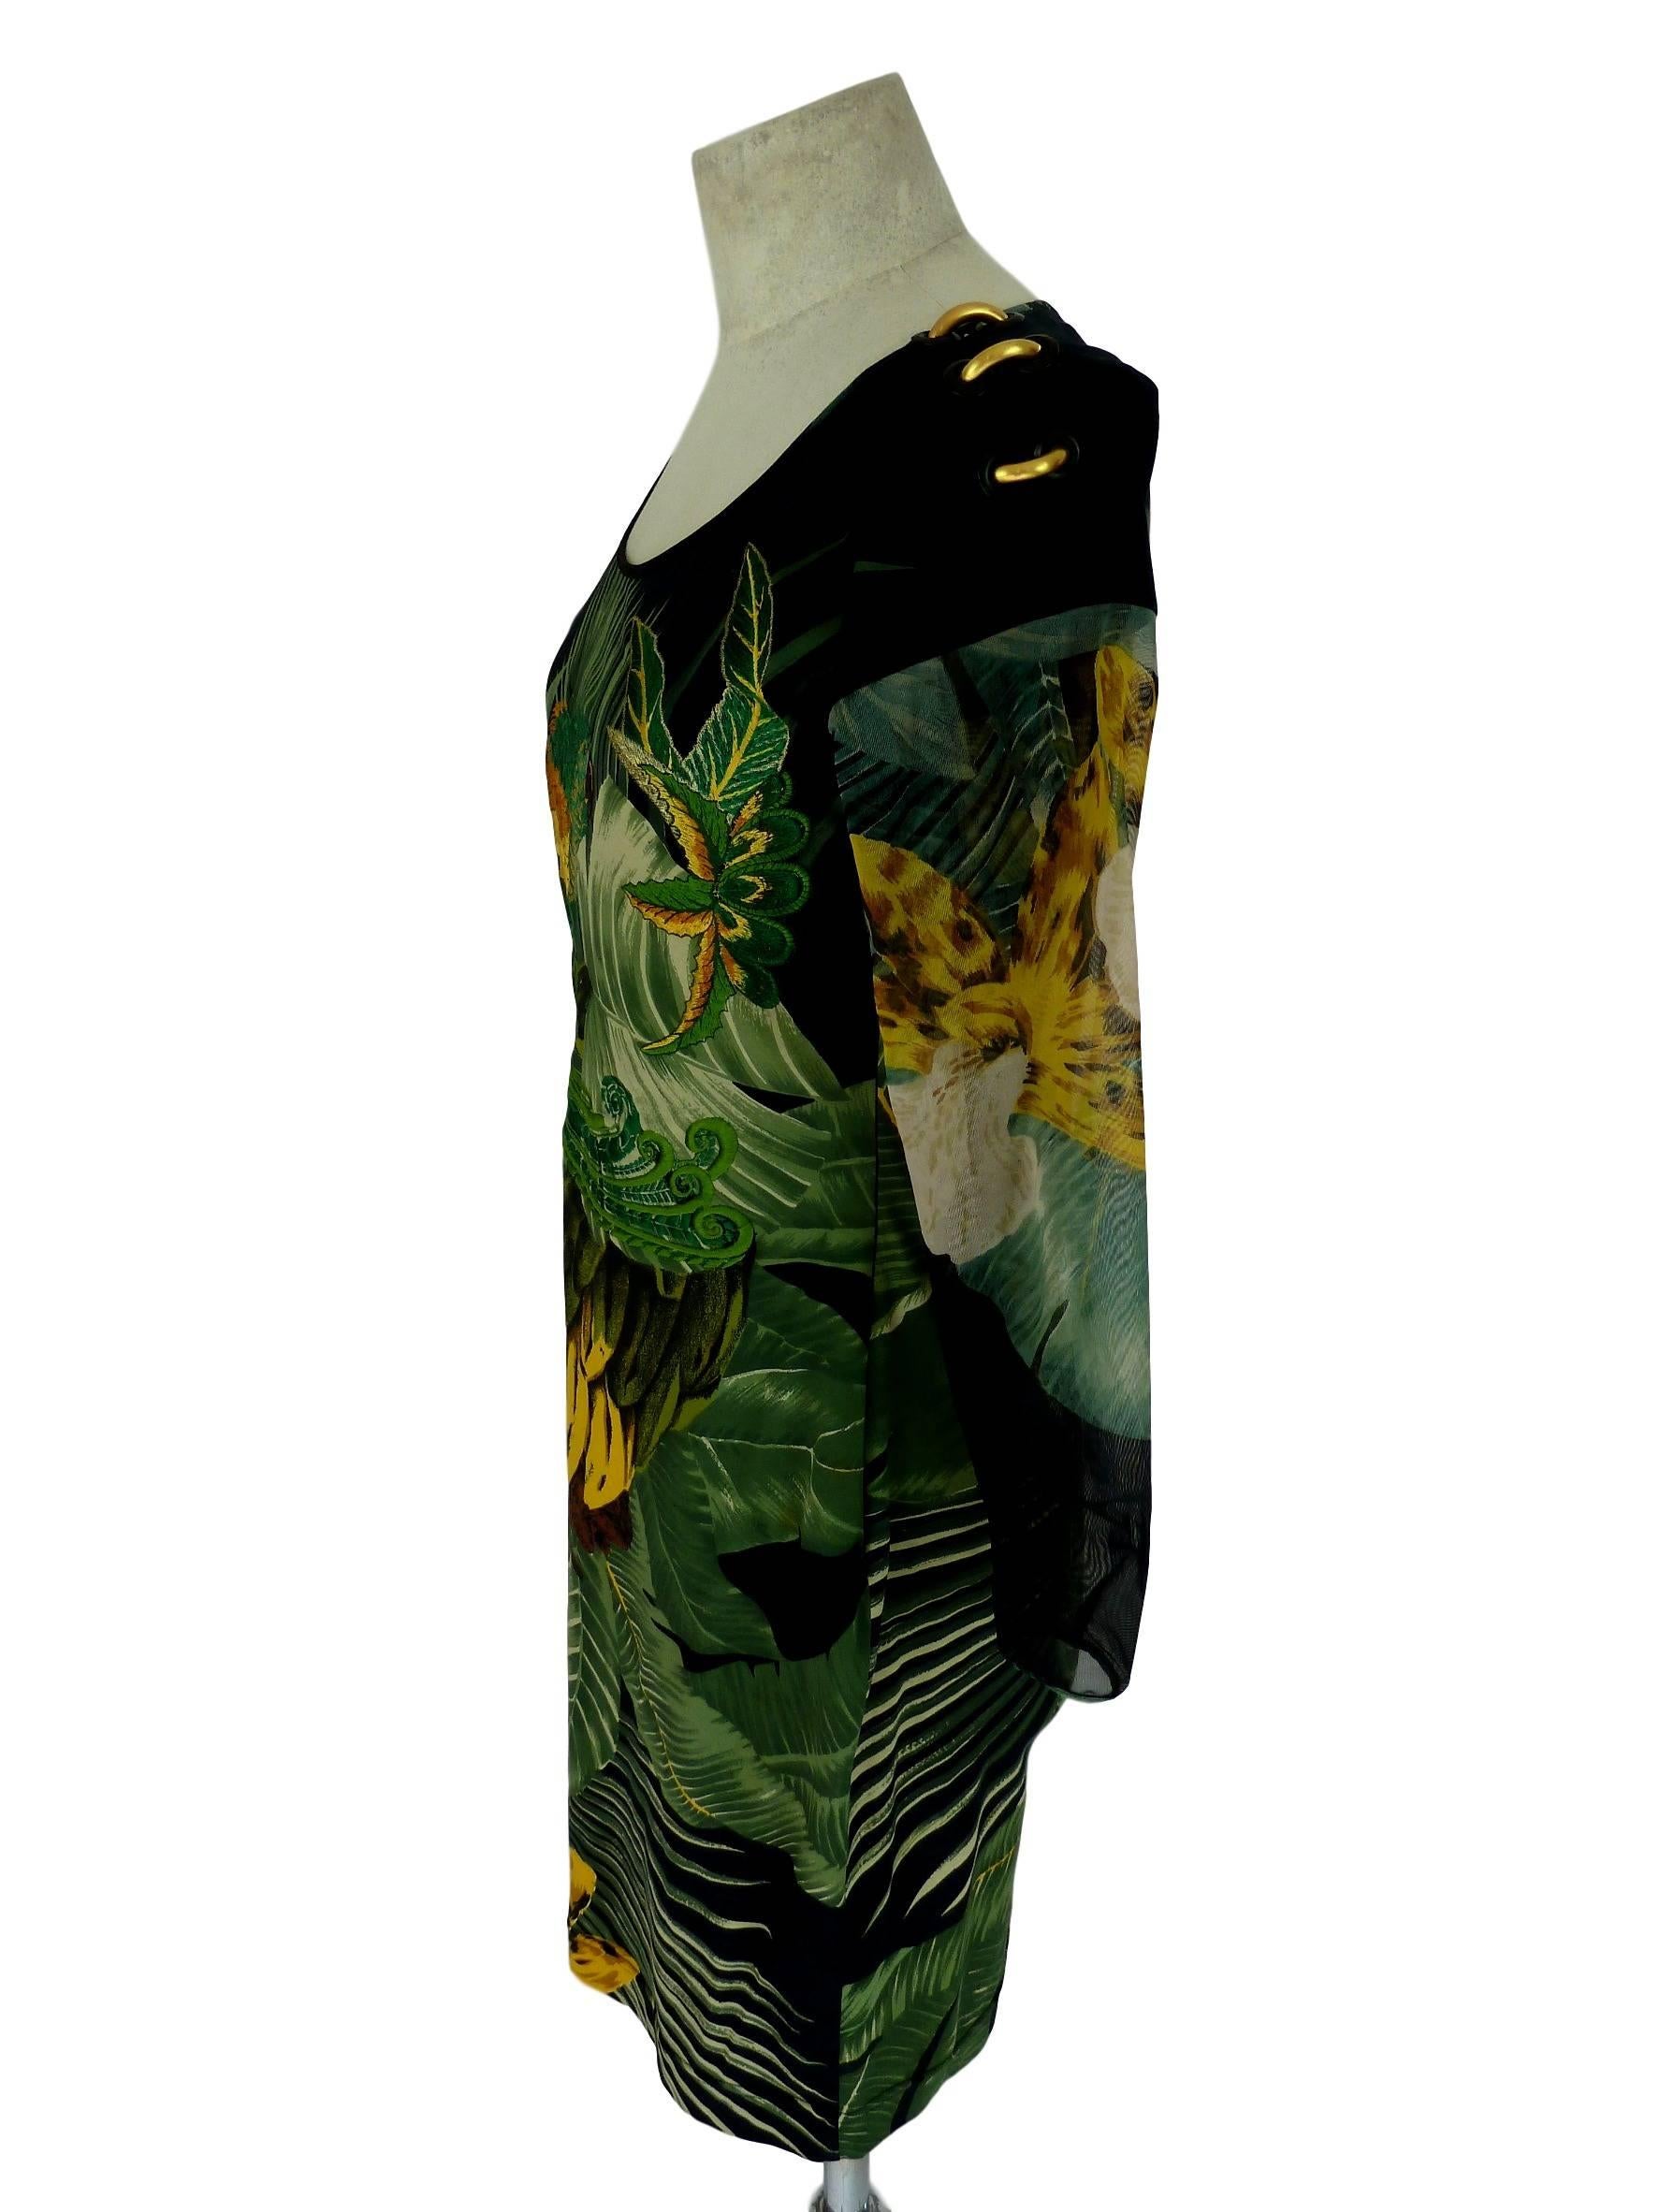 Black Gianfranco Ferrè 1980s silk vintage dress animal print women's vintage size 44